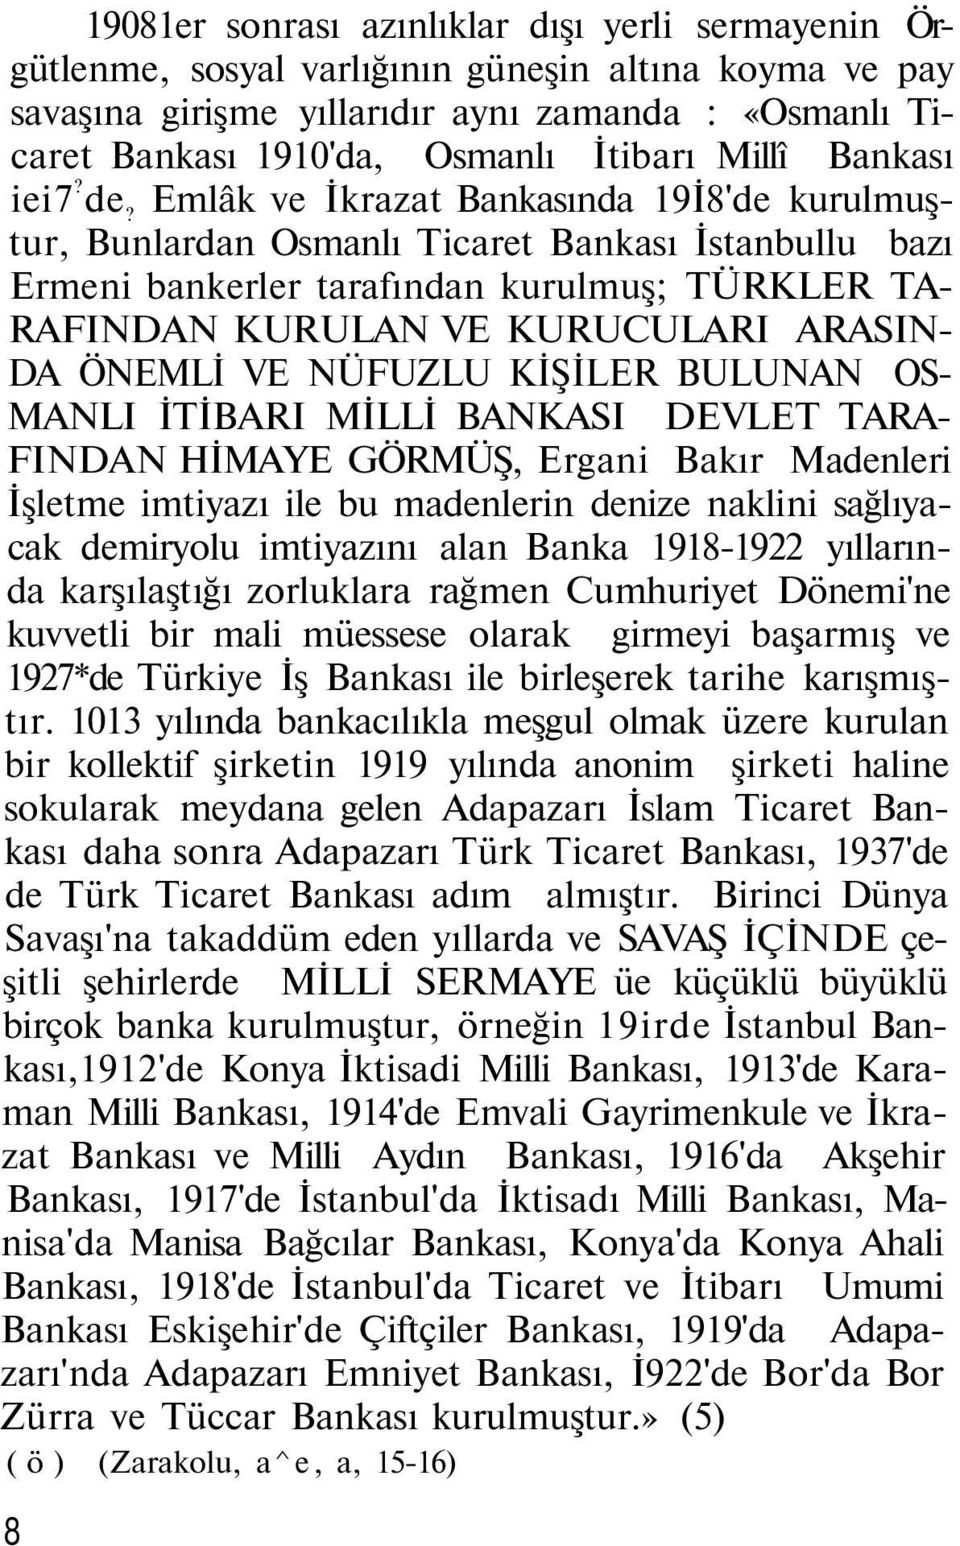 Emlâk ve İkrazat Bankasında 19İ8'de kurulmuştur, Bunlardan Osmanlı Ticaret Bankası İstanbullu bazı Ermeni bankerler tarafından kurulmuş; TÜRKLER TA- RAFINDAN KURULAN VE KURUCULARI ARASIN- DA ÖNEMLİ